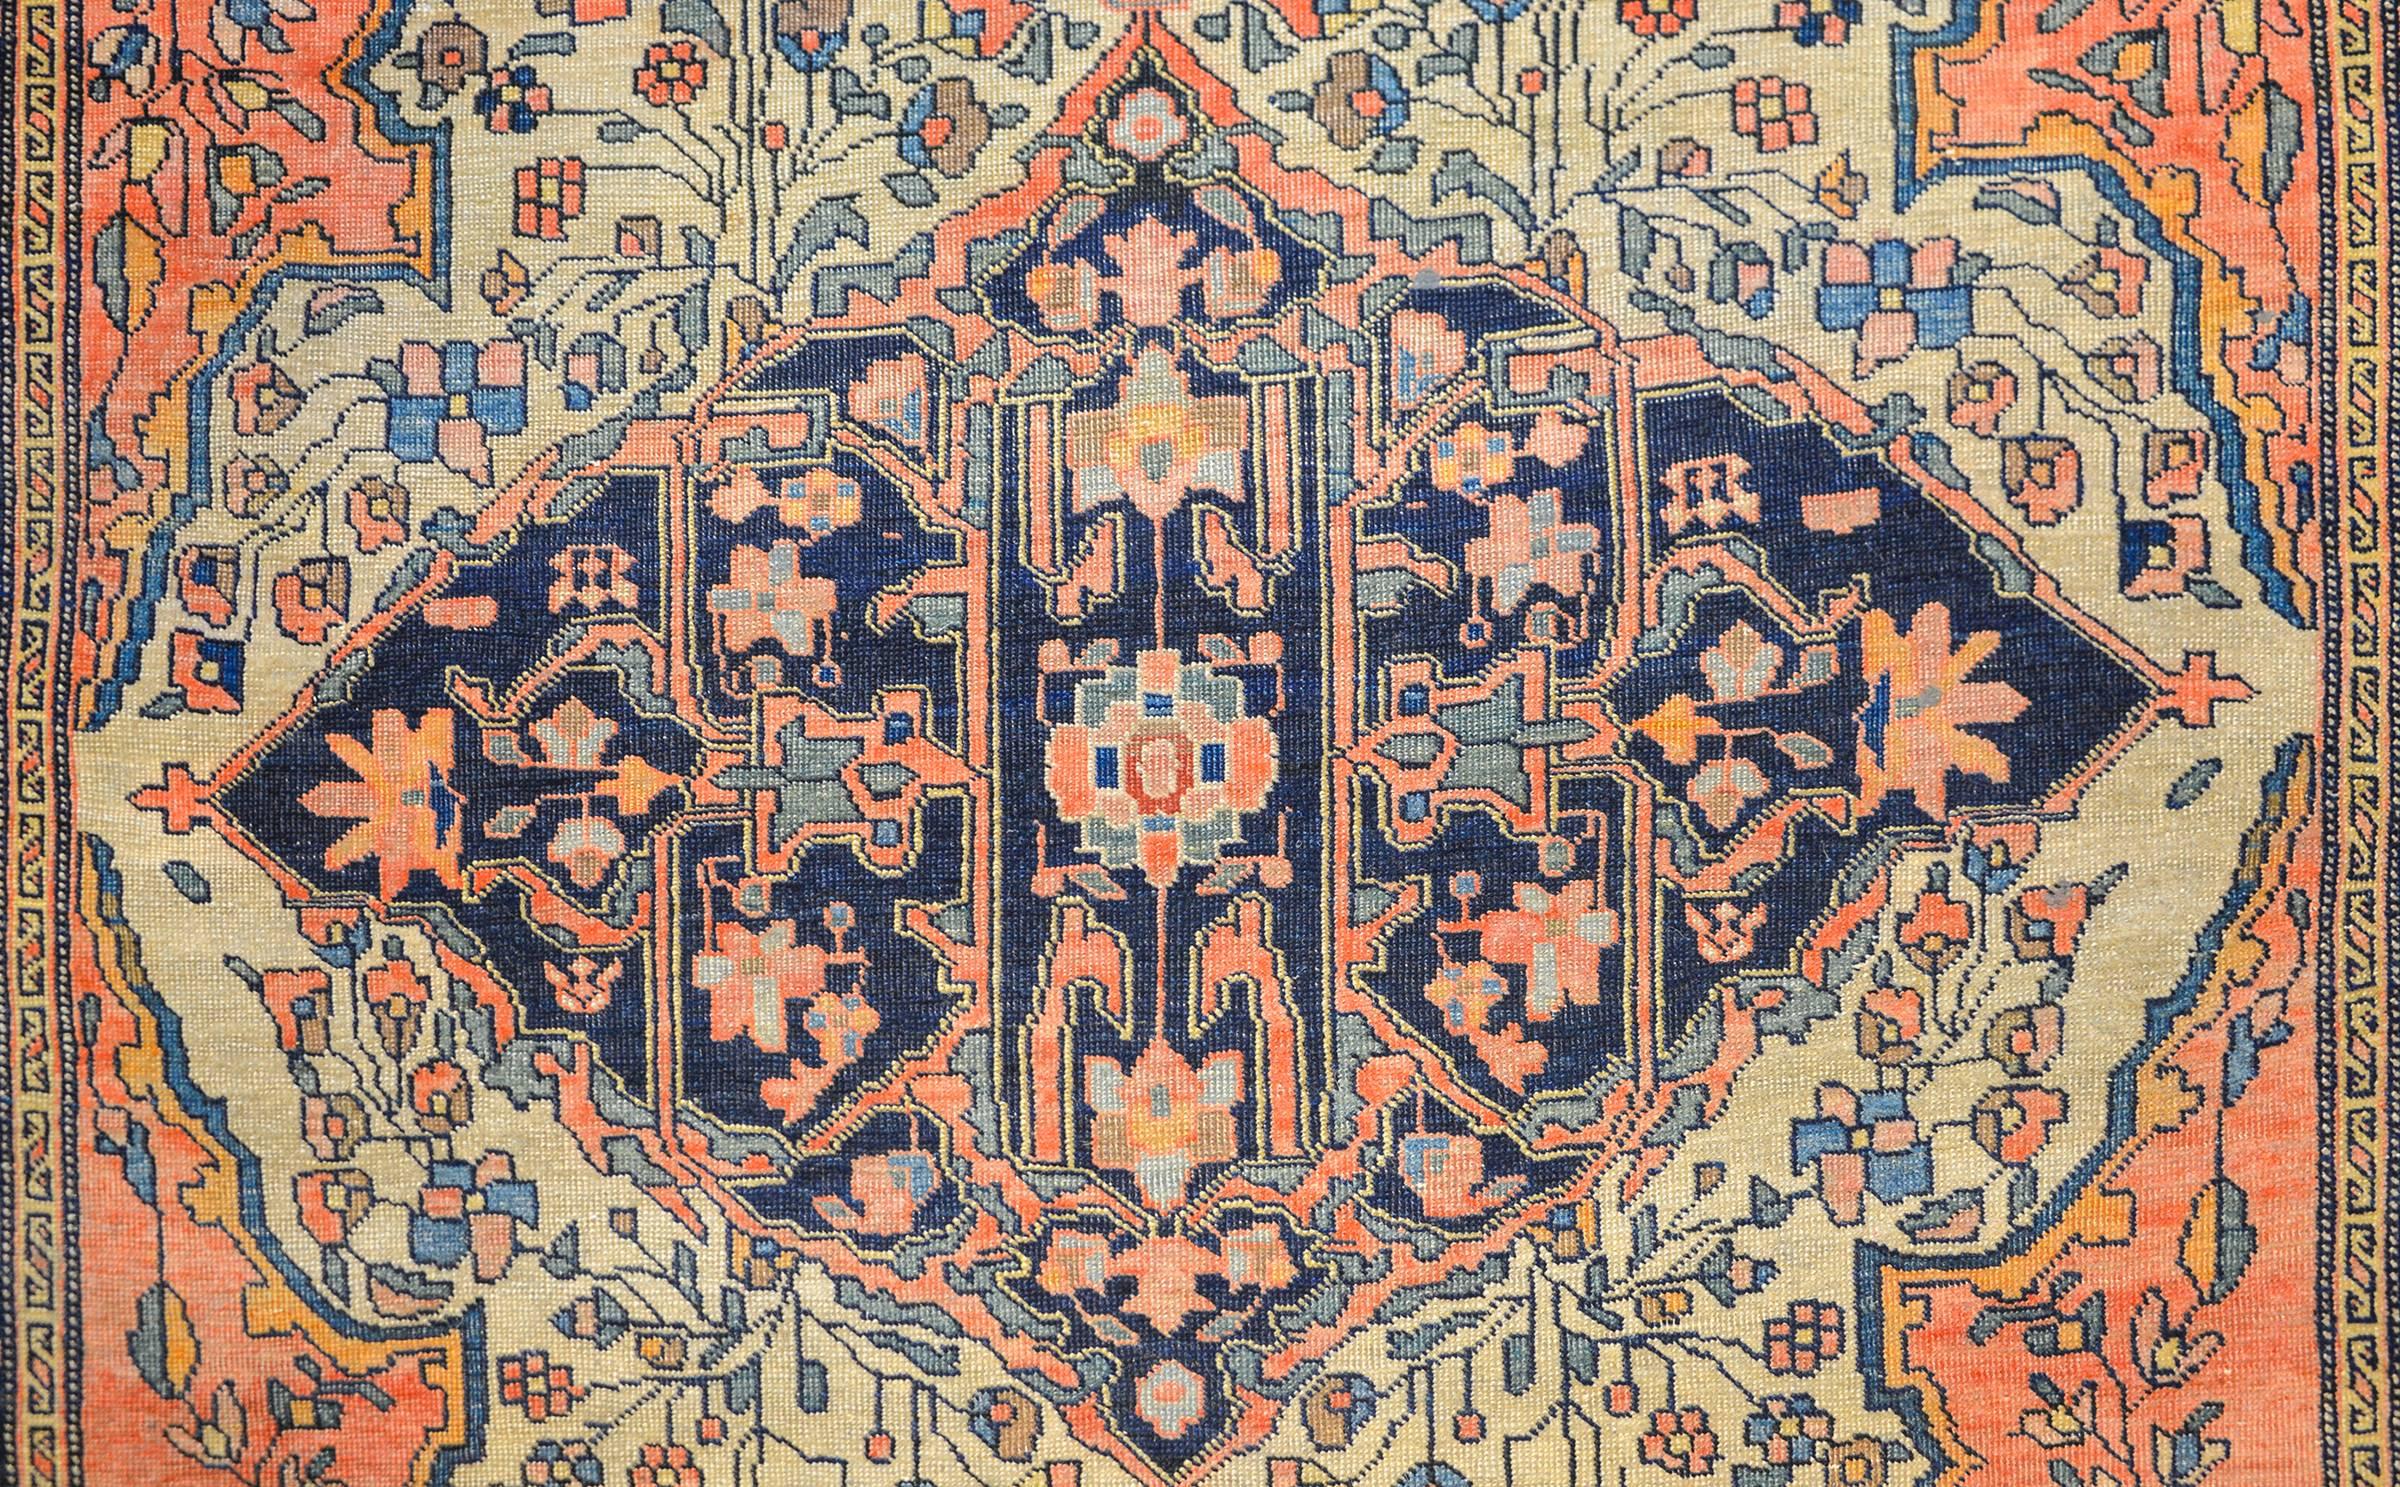 Magnifique tapis persan Sarouk Farahan de la fin du 19e siècle, avec un motif d'une grande densité de vignes, de feuilles et de fleurs entrelacées, tissé avec de la laine teintée à l'indigo, au saumon et à l'or. La bordure est douce, avec un motif